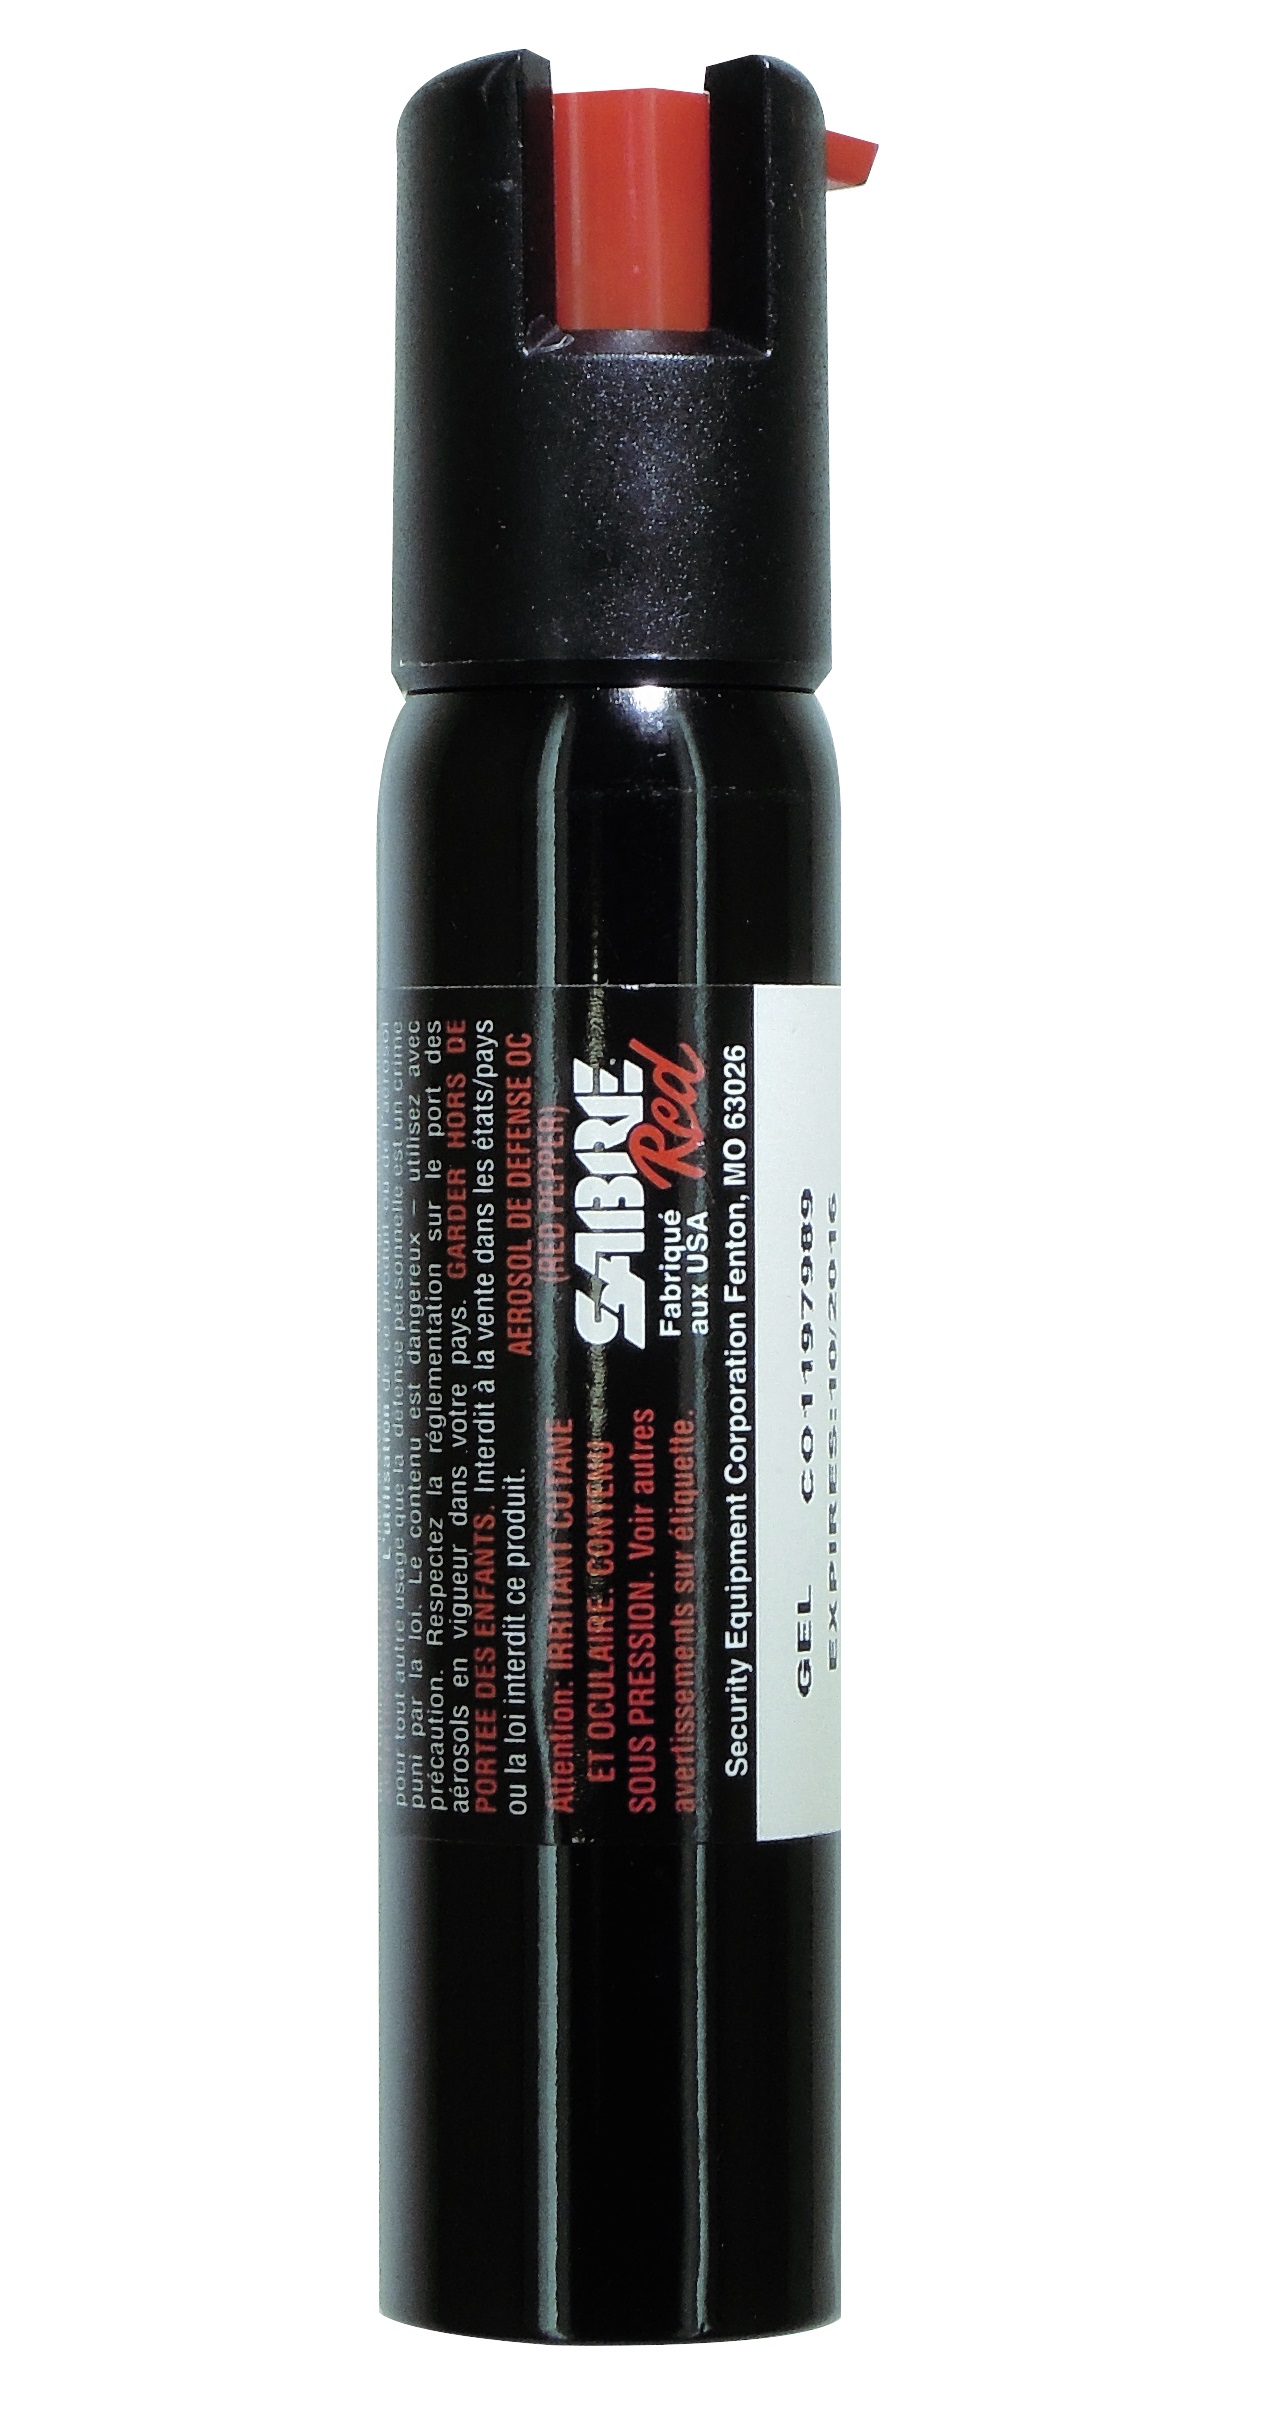 Sabre Red spray de défense poivre 60 ml + colorant rouge